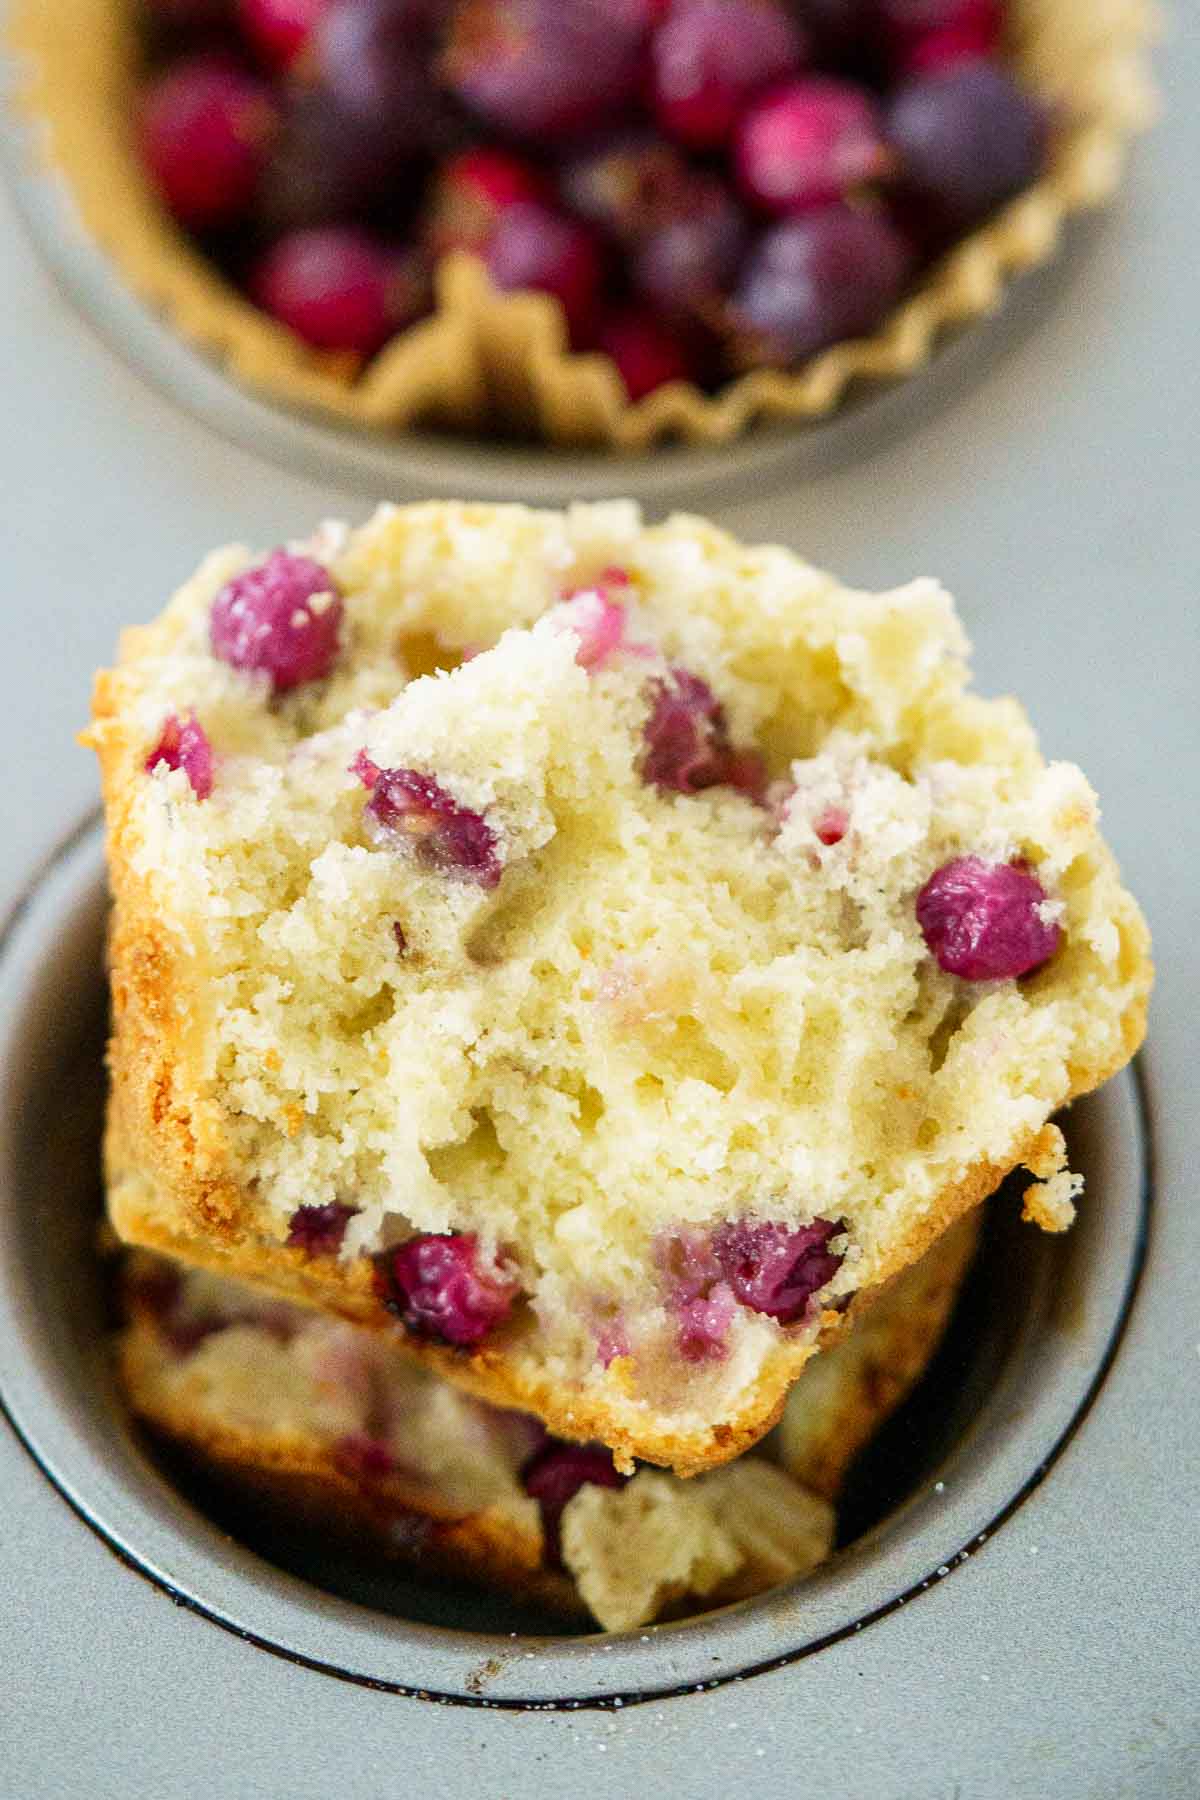 serviceberry muffin cut in half